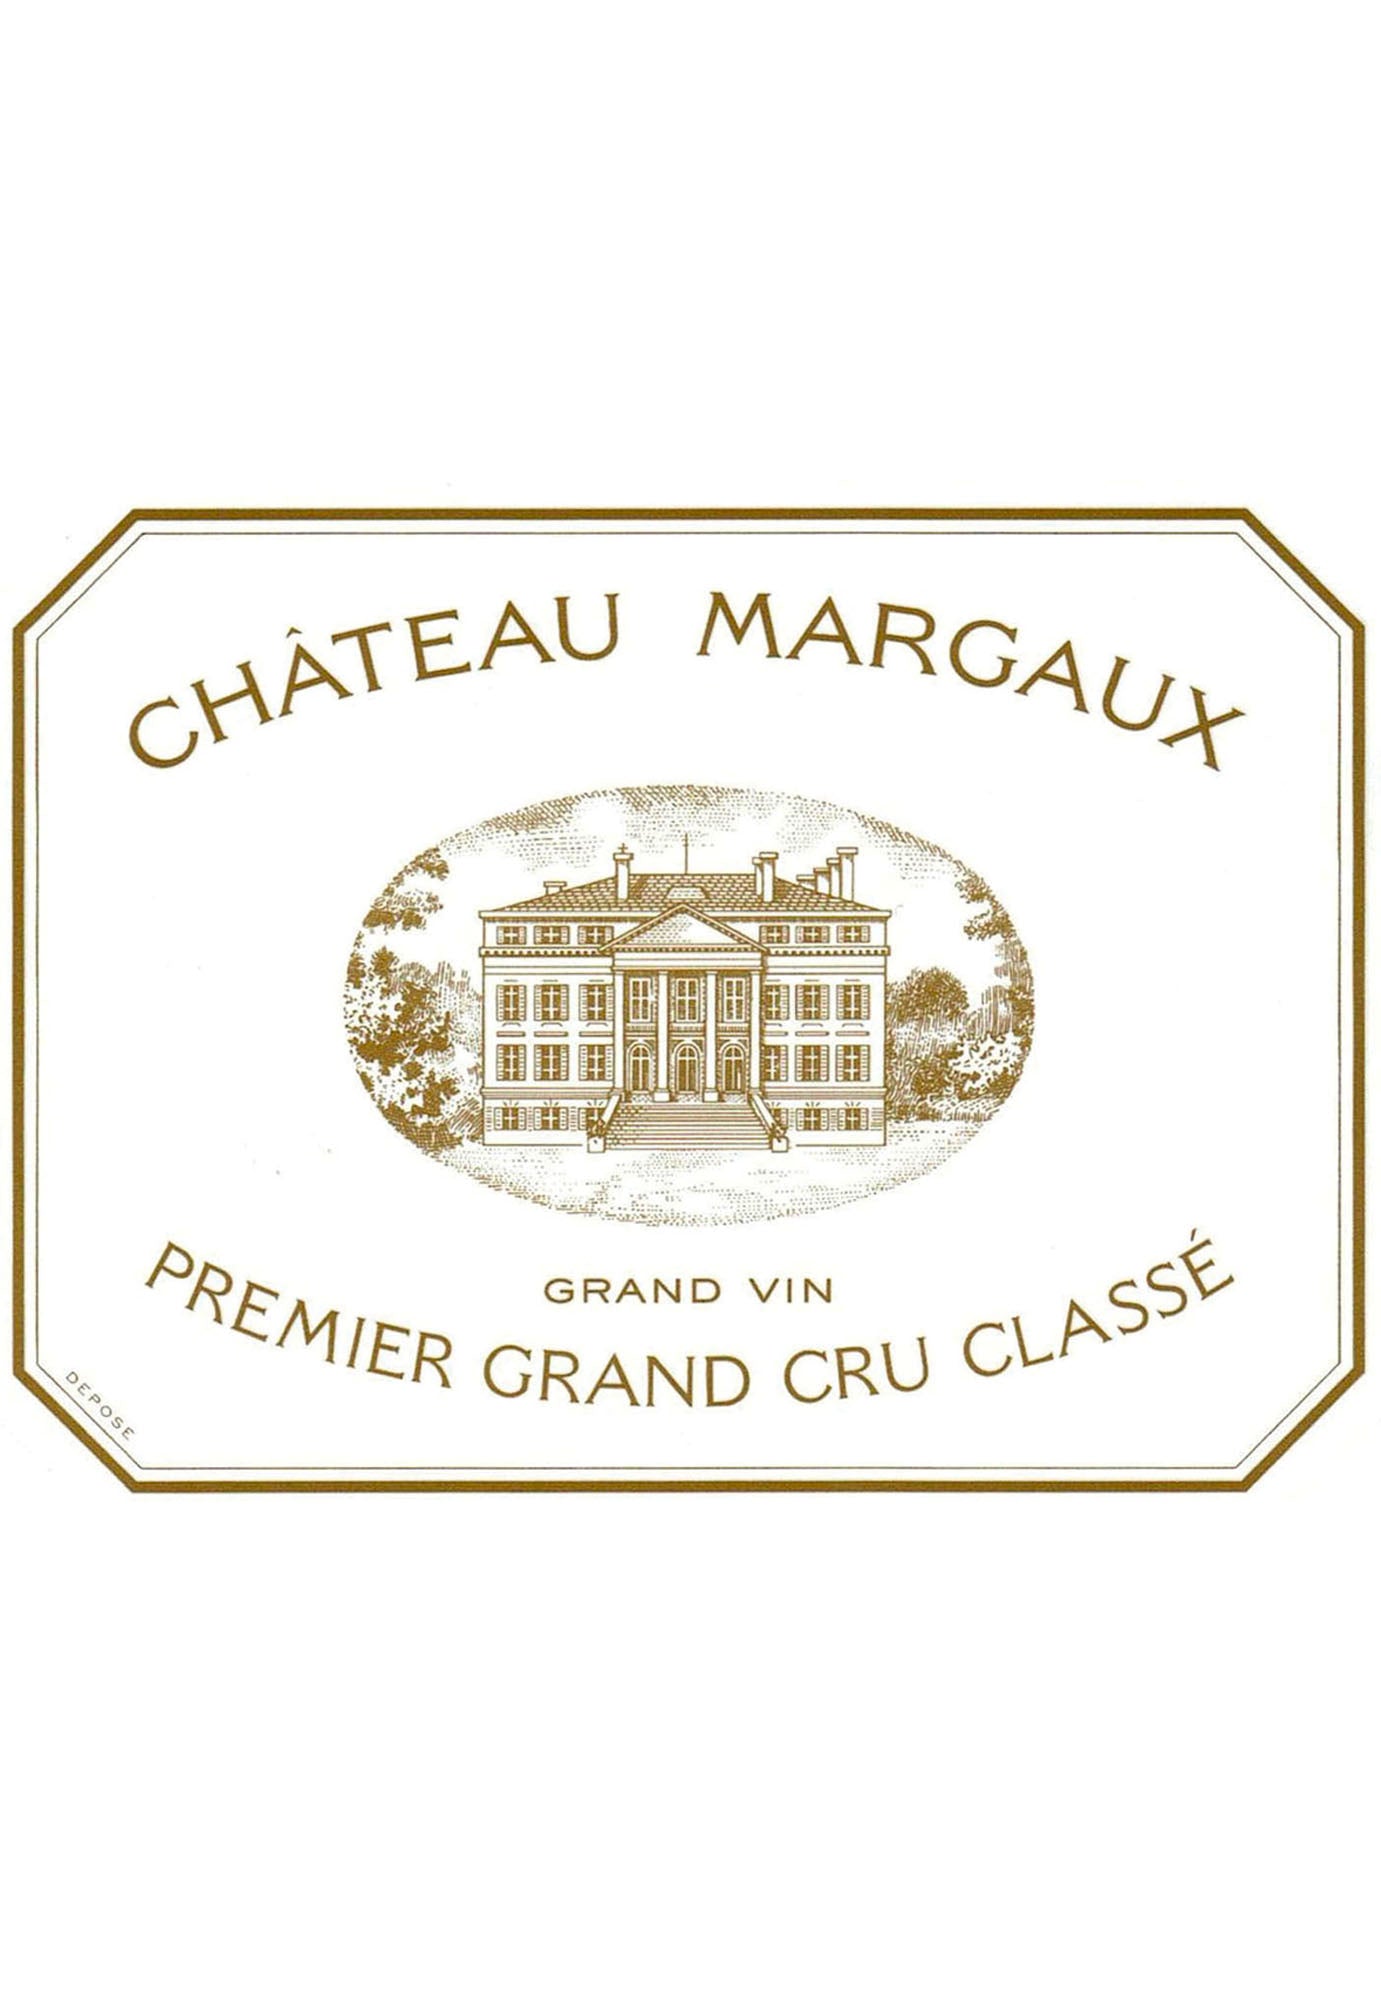 Chateau Margaux 2013